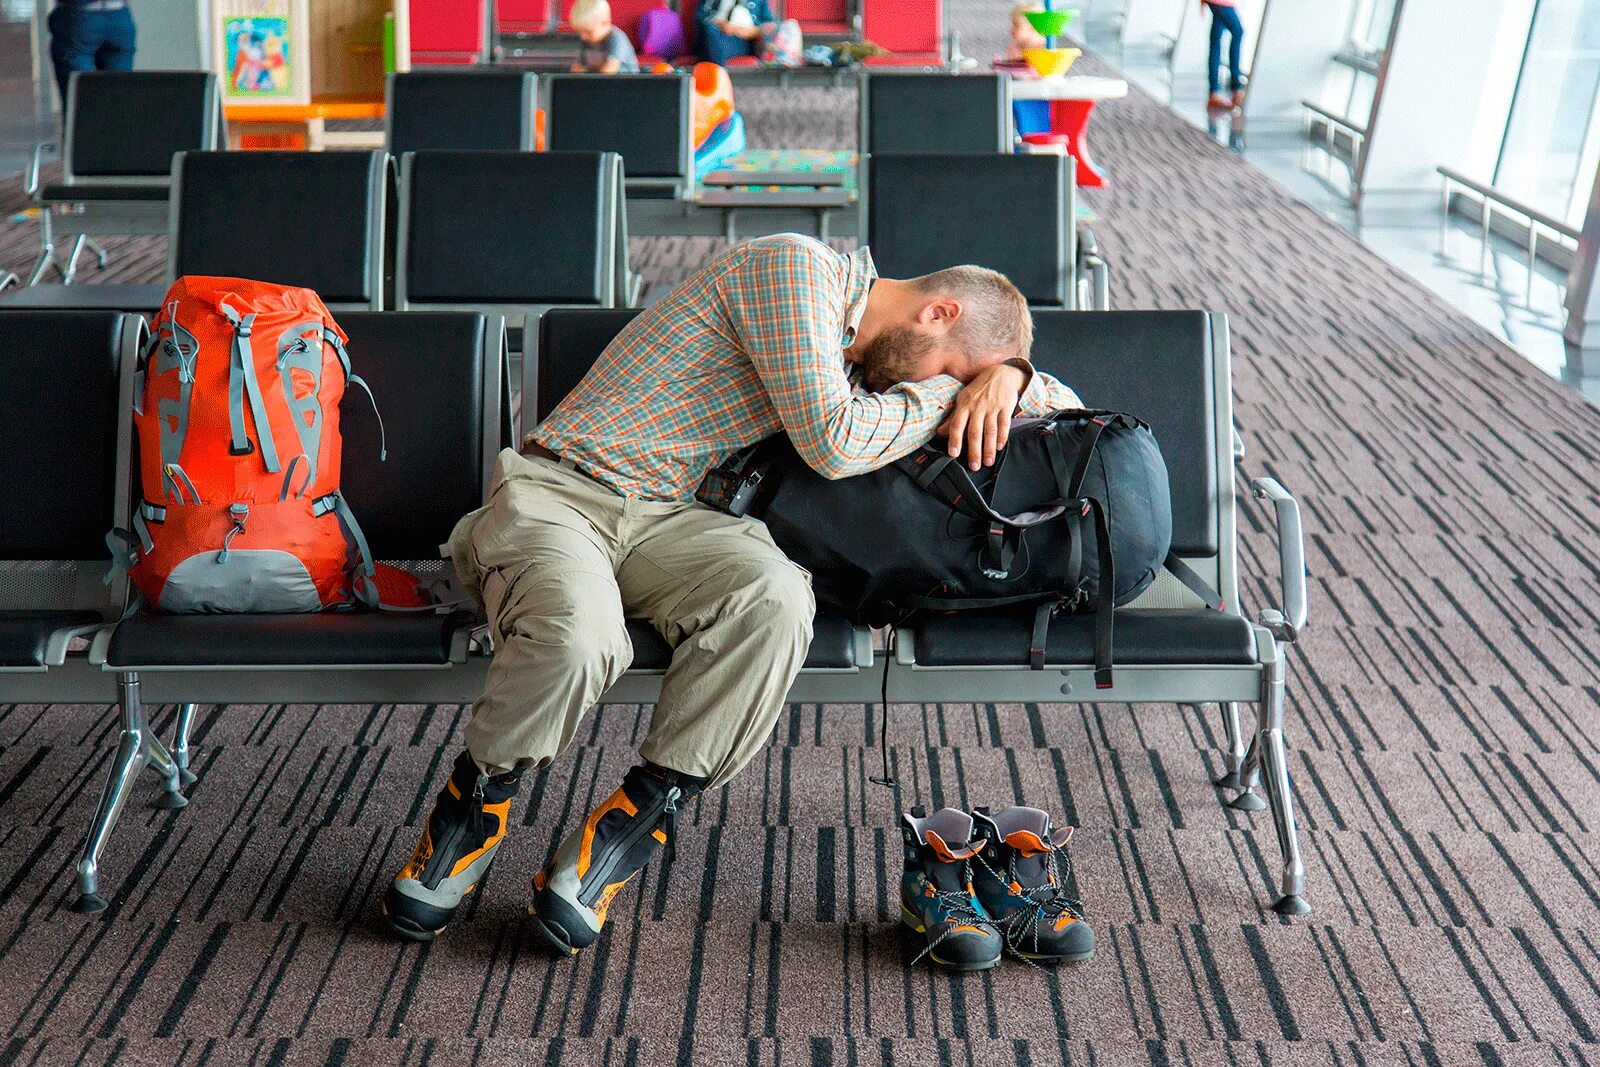 Ожидание в аэропорту. Люди в аэропорту ждут. Люди в зале ожидания. Человек спящий в аэропорту.